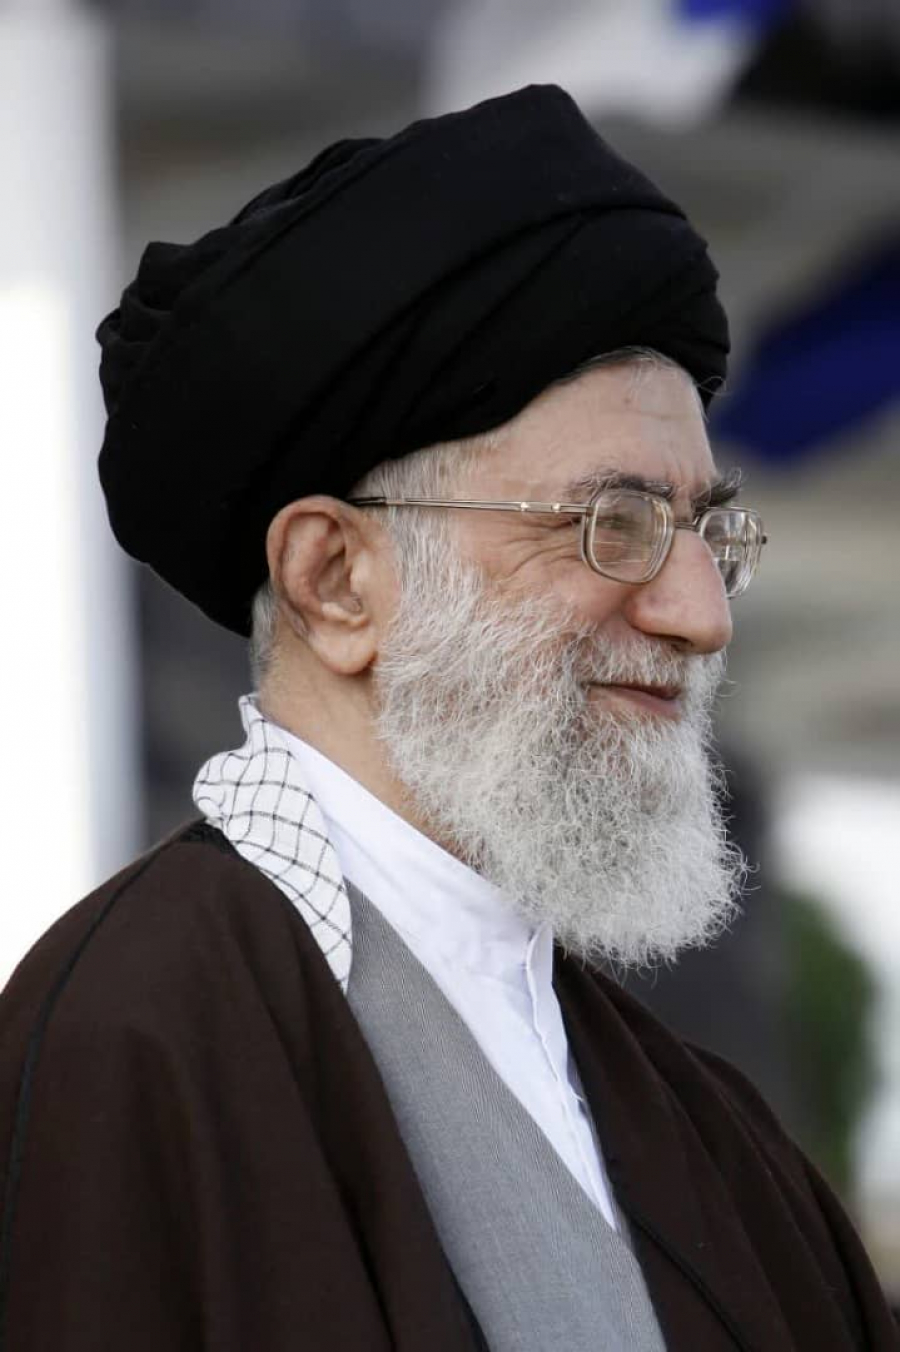 امریکہ علامتی طور پر بھی ایران کو تسلیم کرنے میں کامیاب نہیں ہوسکا/حداکثر دباؤ ناکام ہوچکا ہے